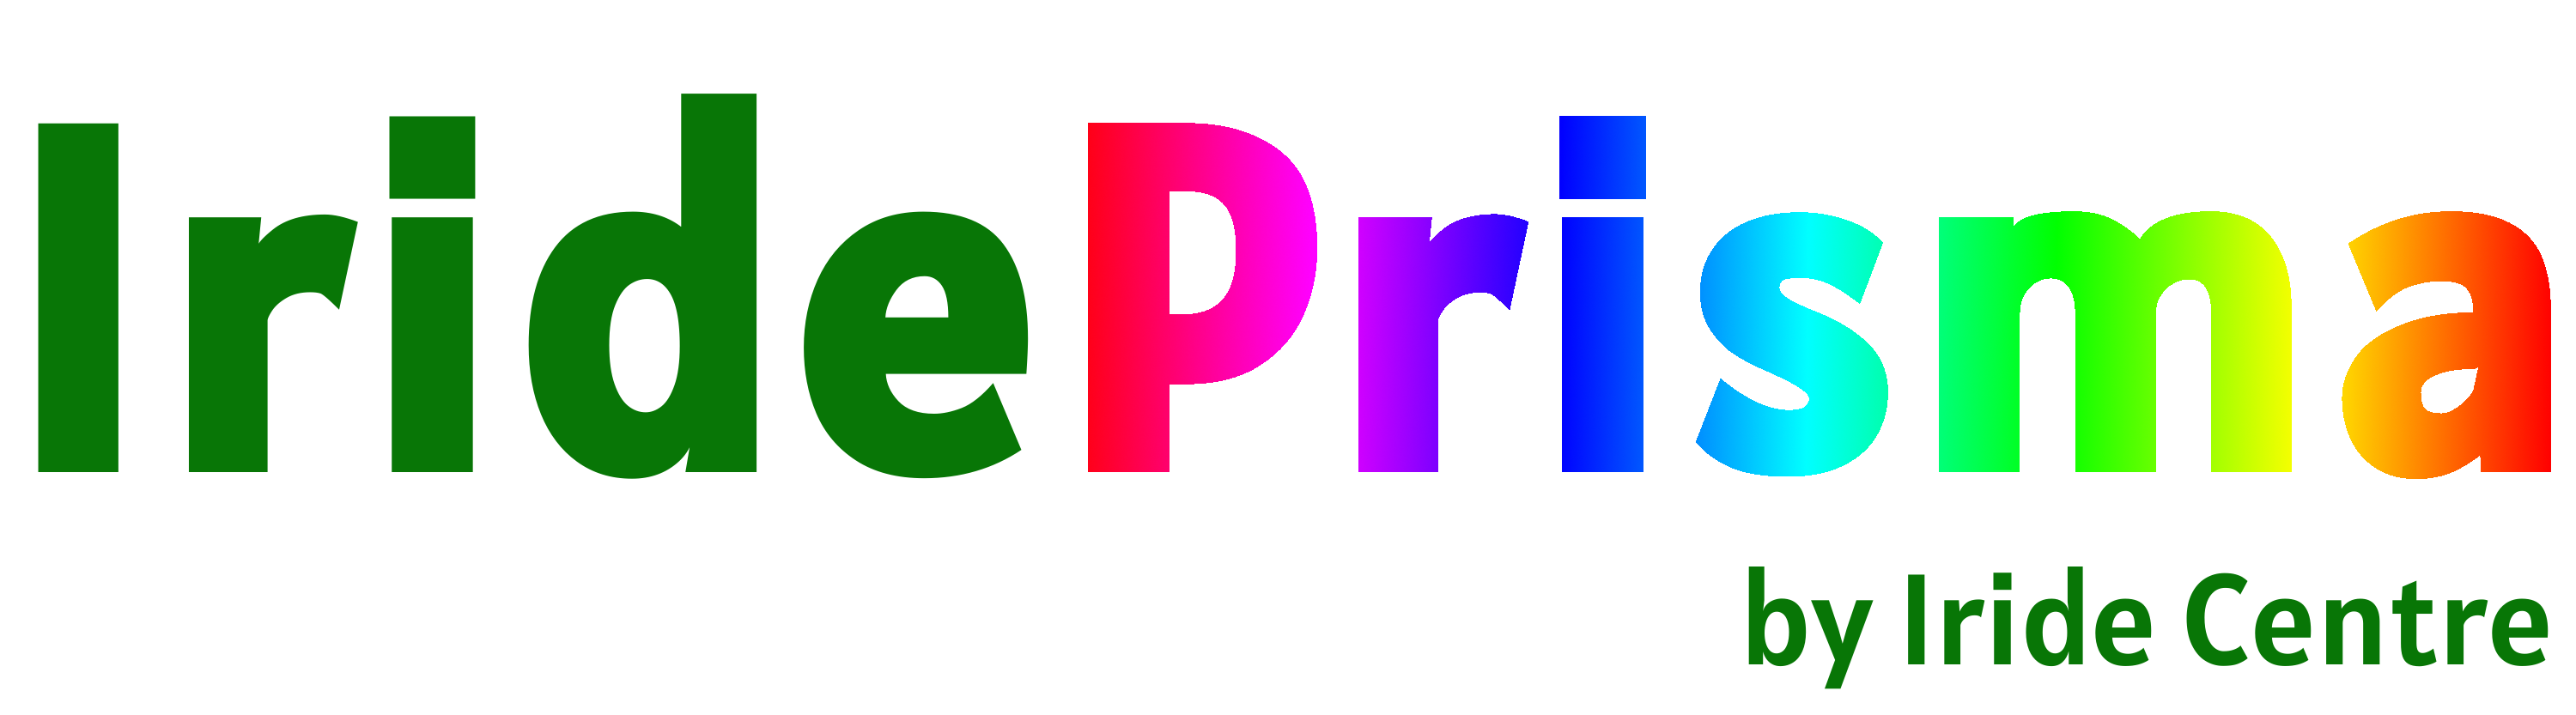 Λογότυπο Prisma χωρίς φόντο